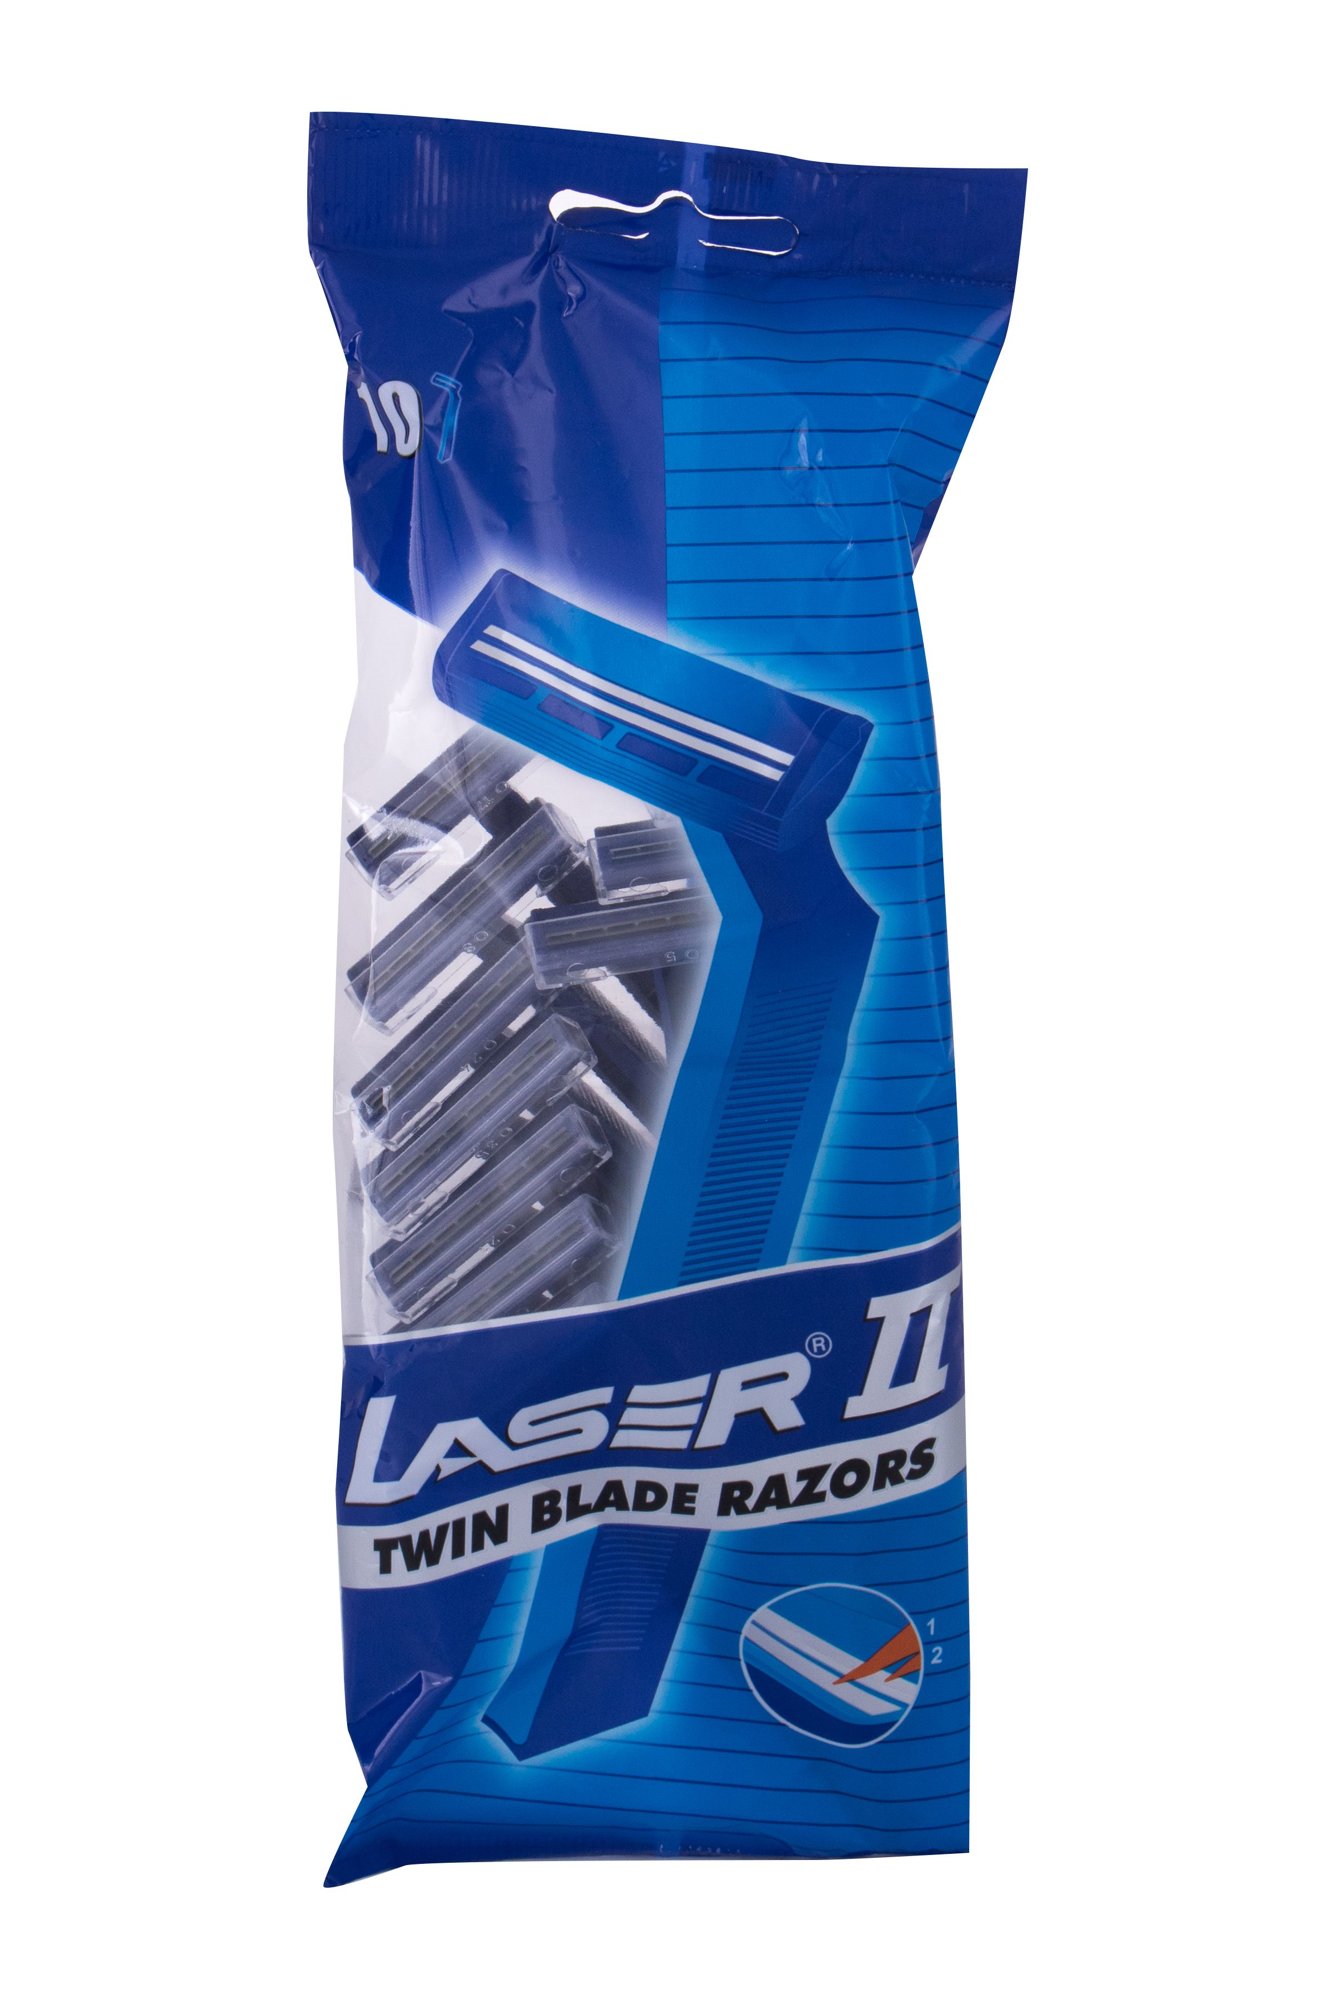 Laser II For Men skustuvas